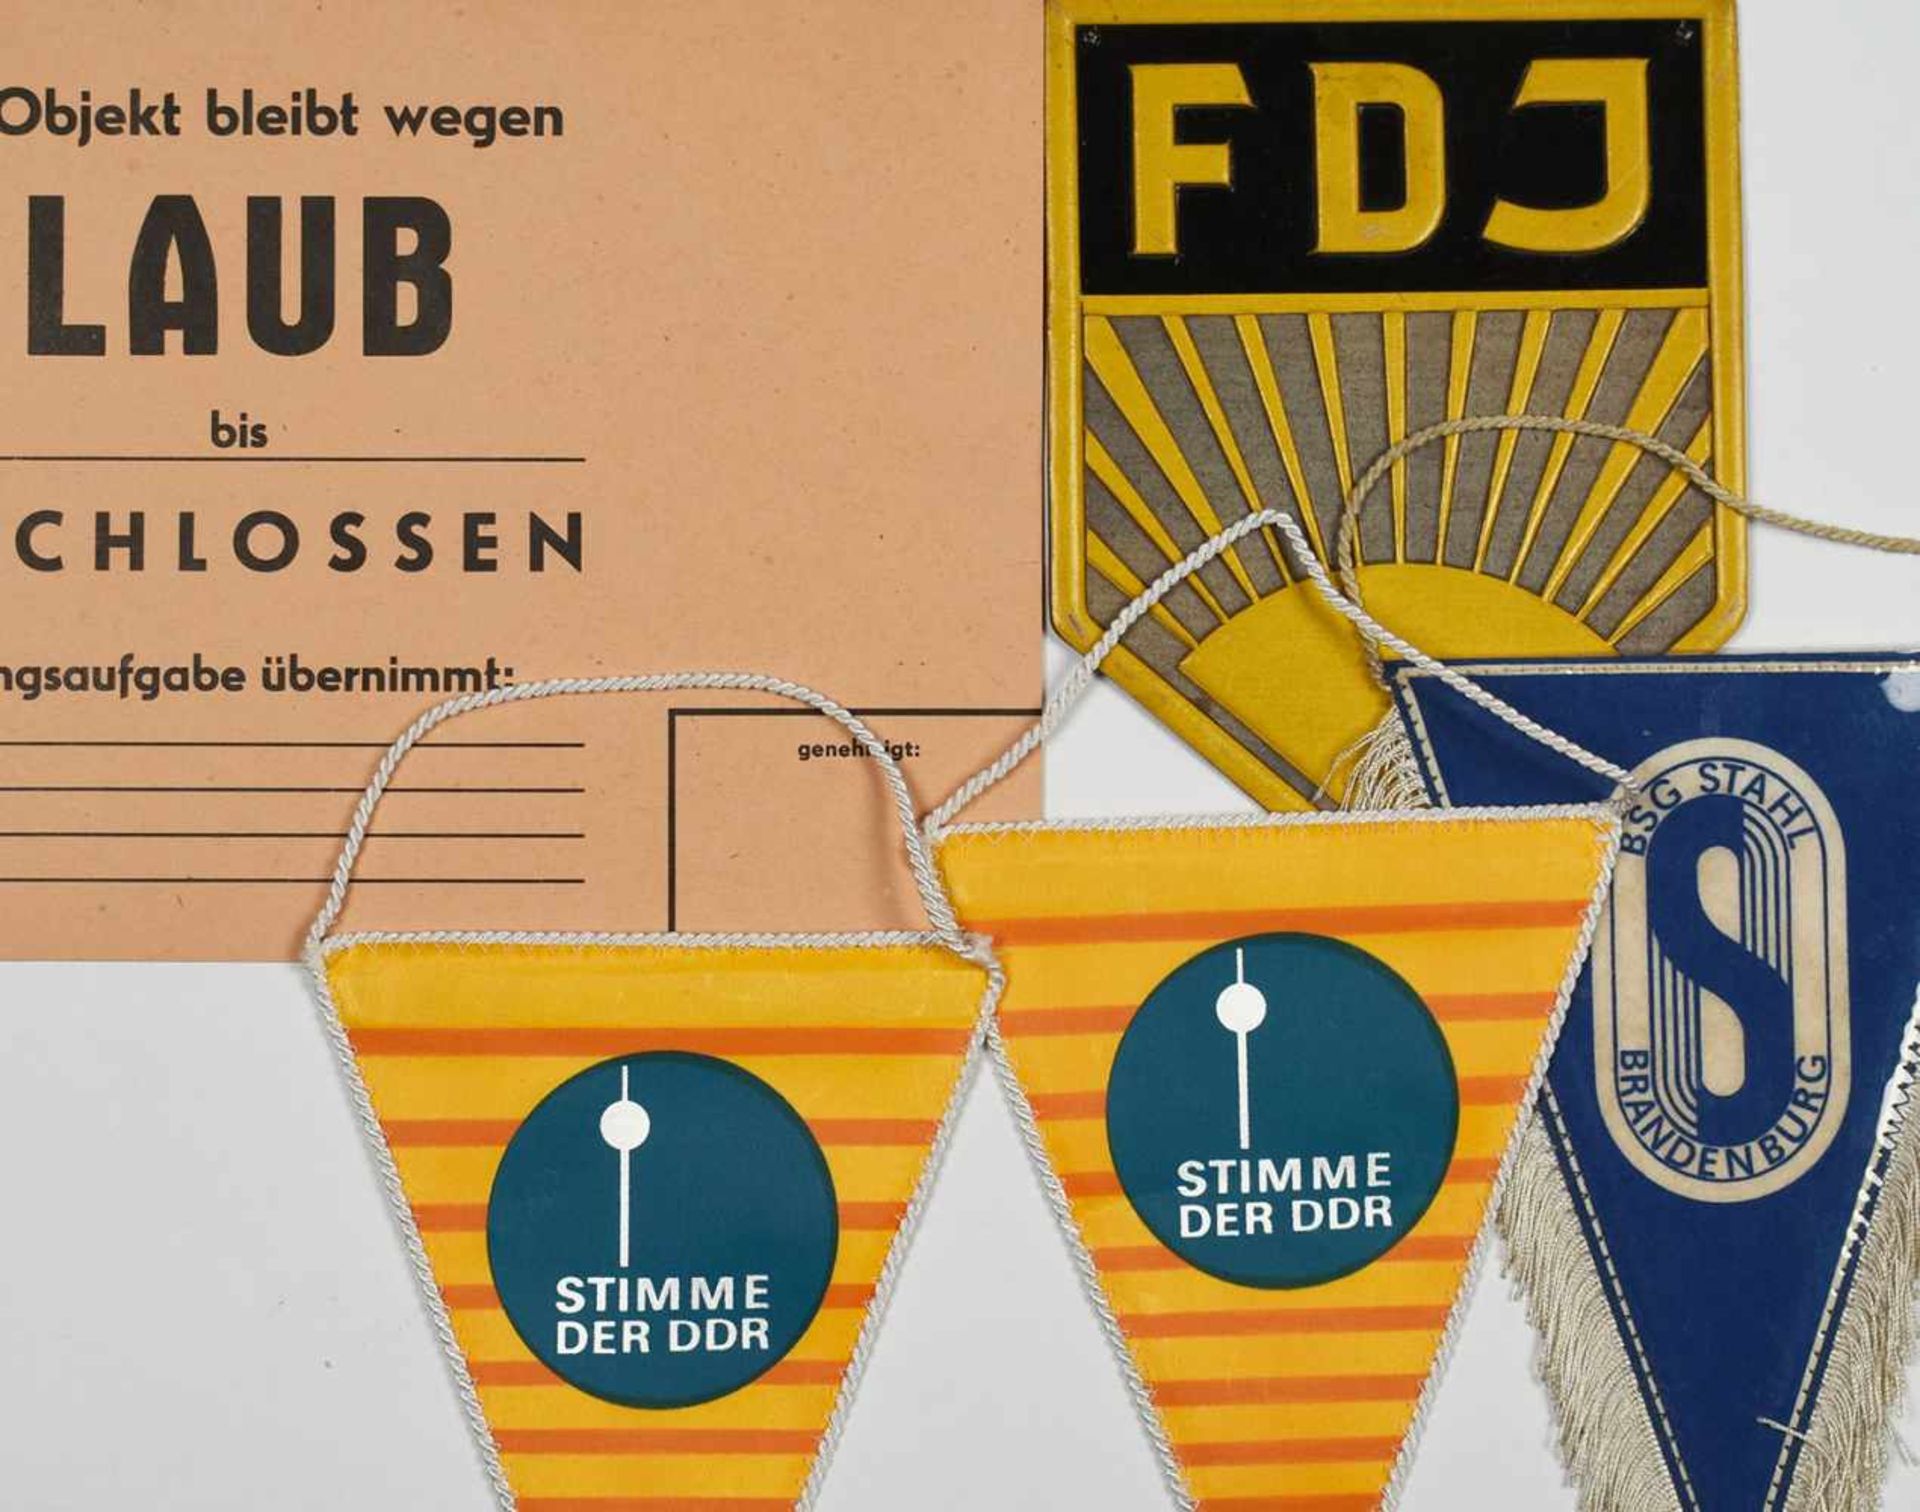 Konvolut DDR-Erinnerungsstücke dabei: versch. Wimpel, u.a. "Stimme der DDR" und "FDJ", gedrucktes